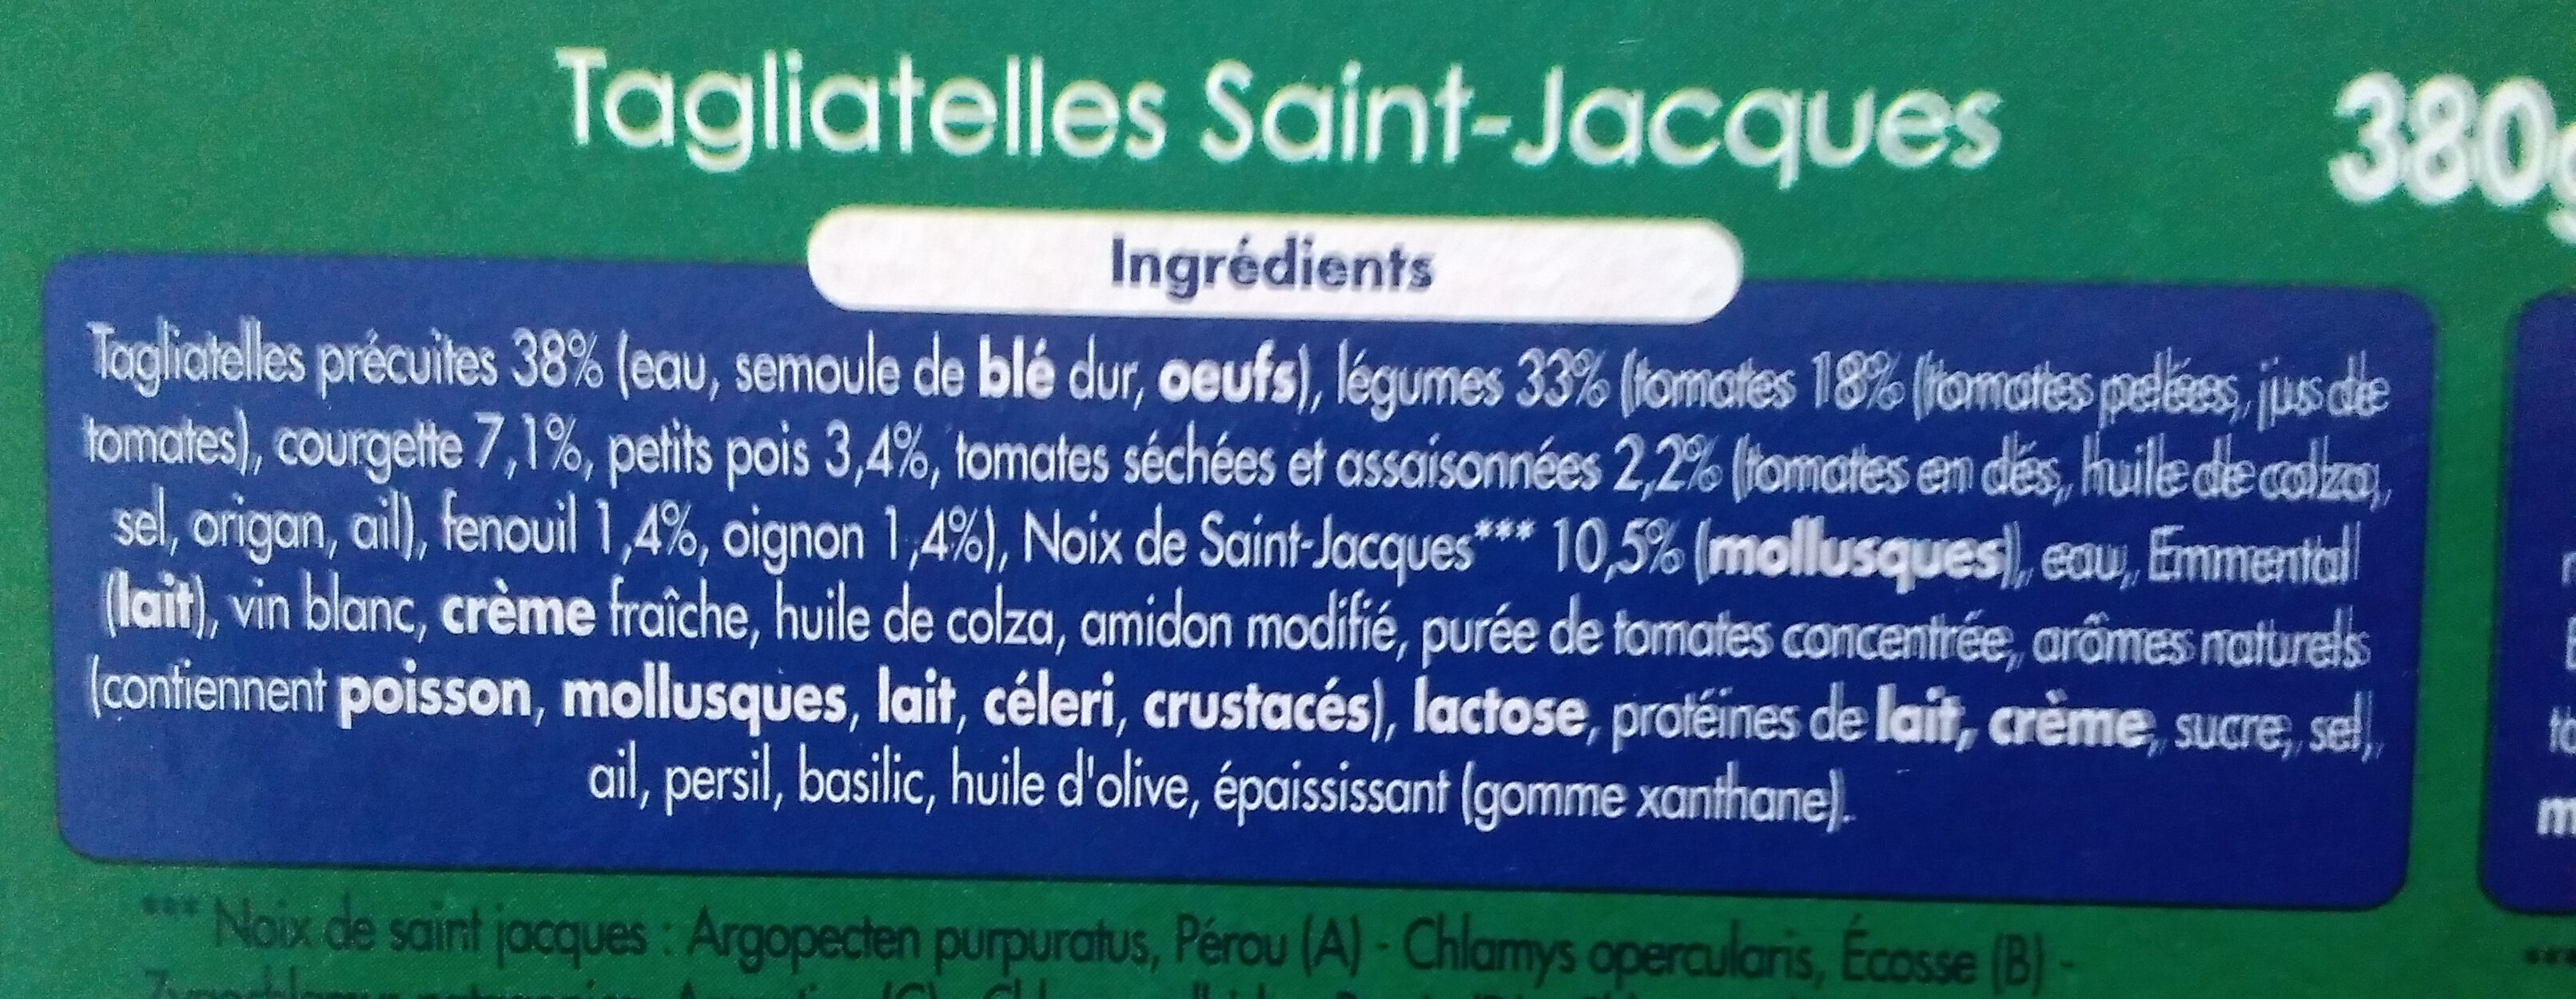 Tagliatelles saint jacques - Ingrédients